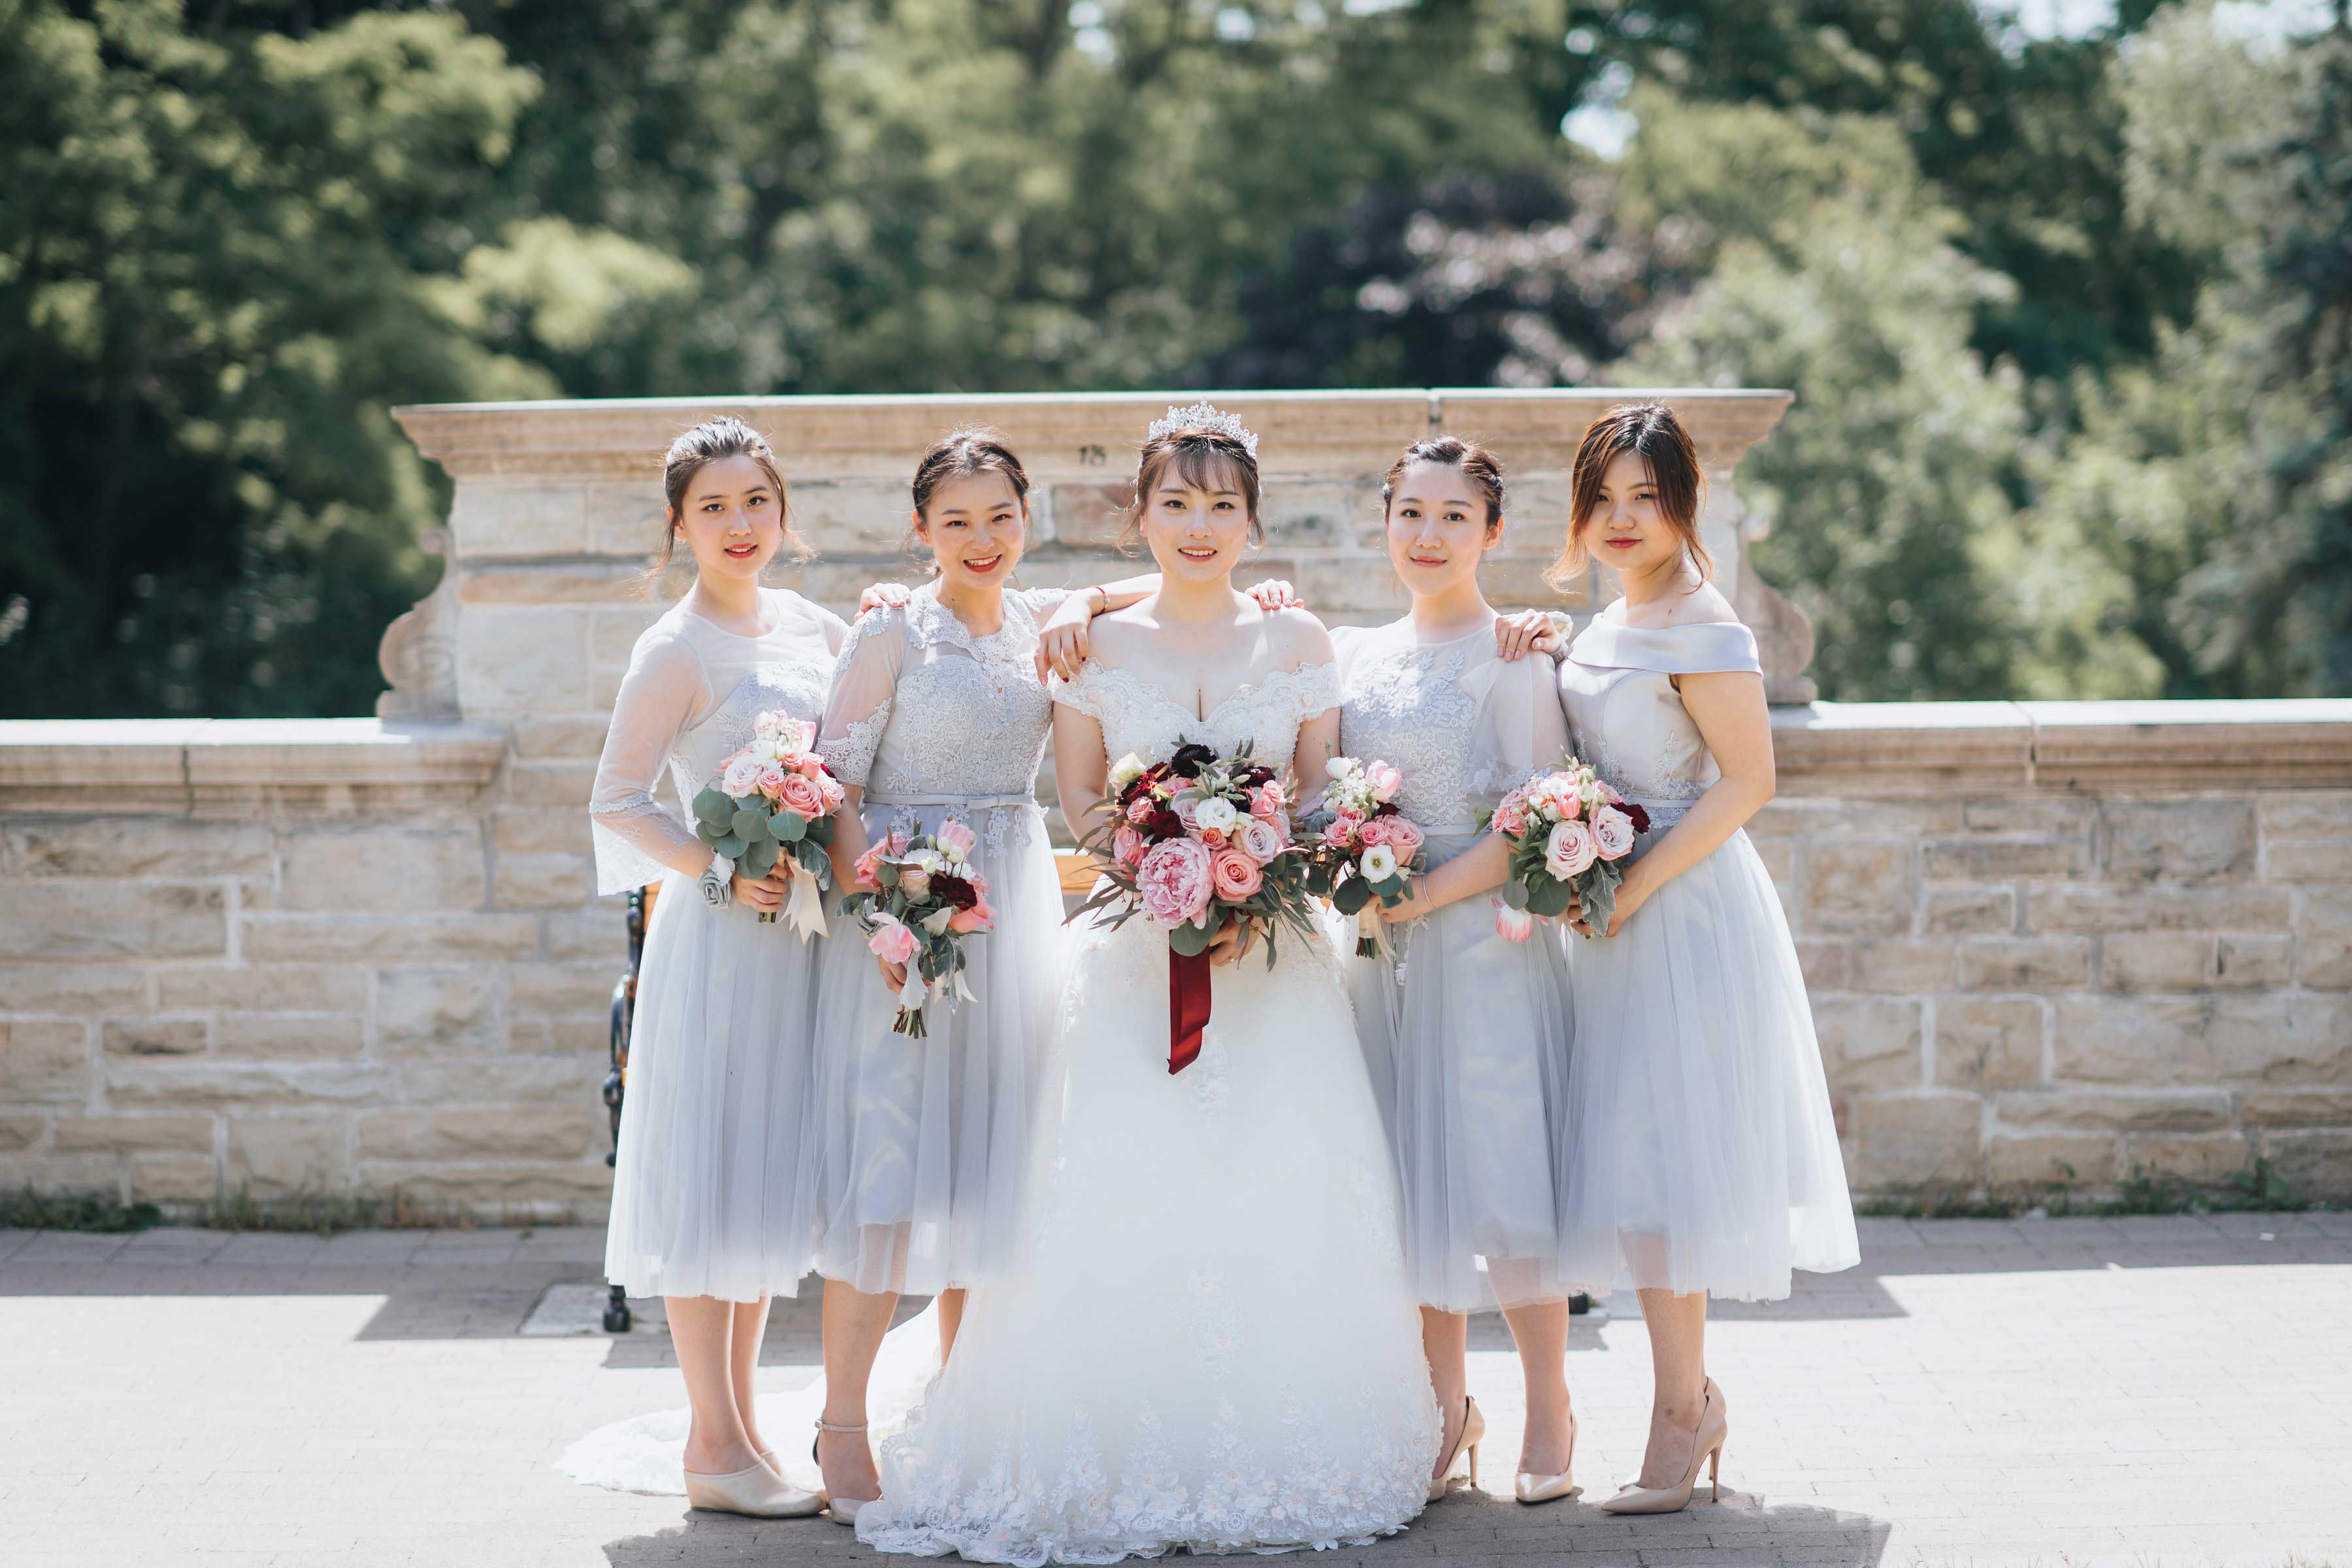 Bride & Brides Maids Group Photo